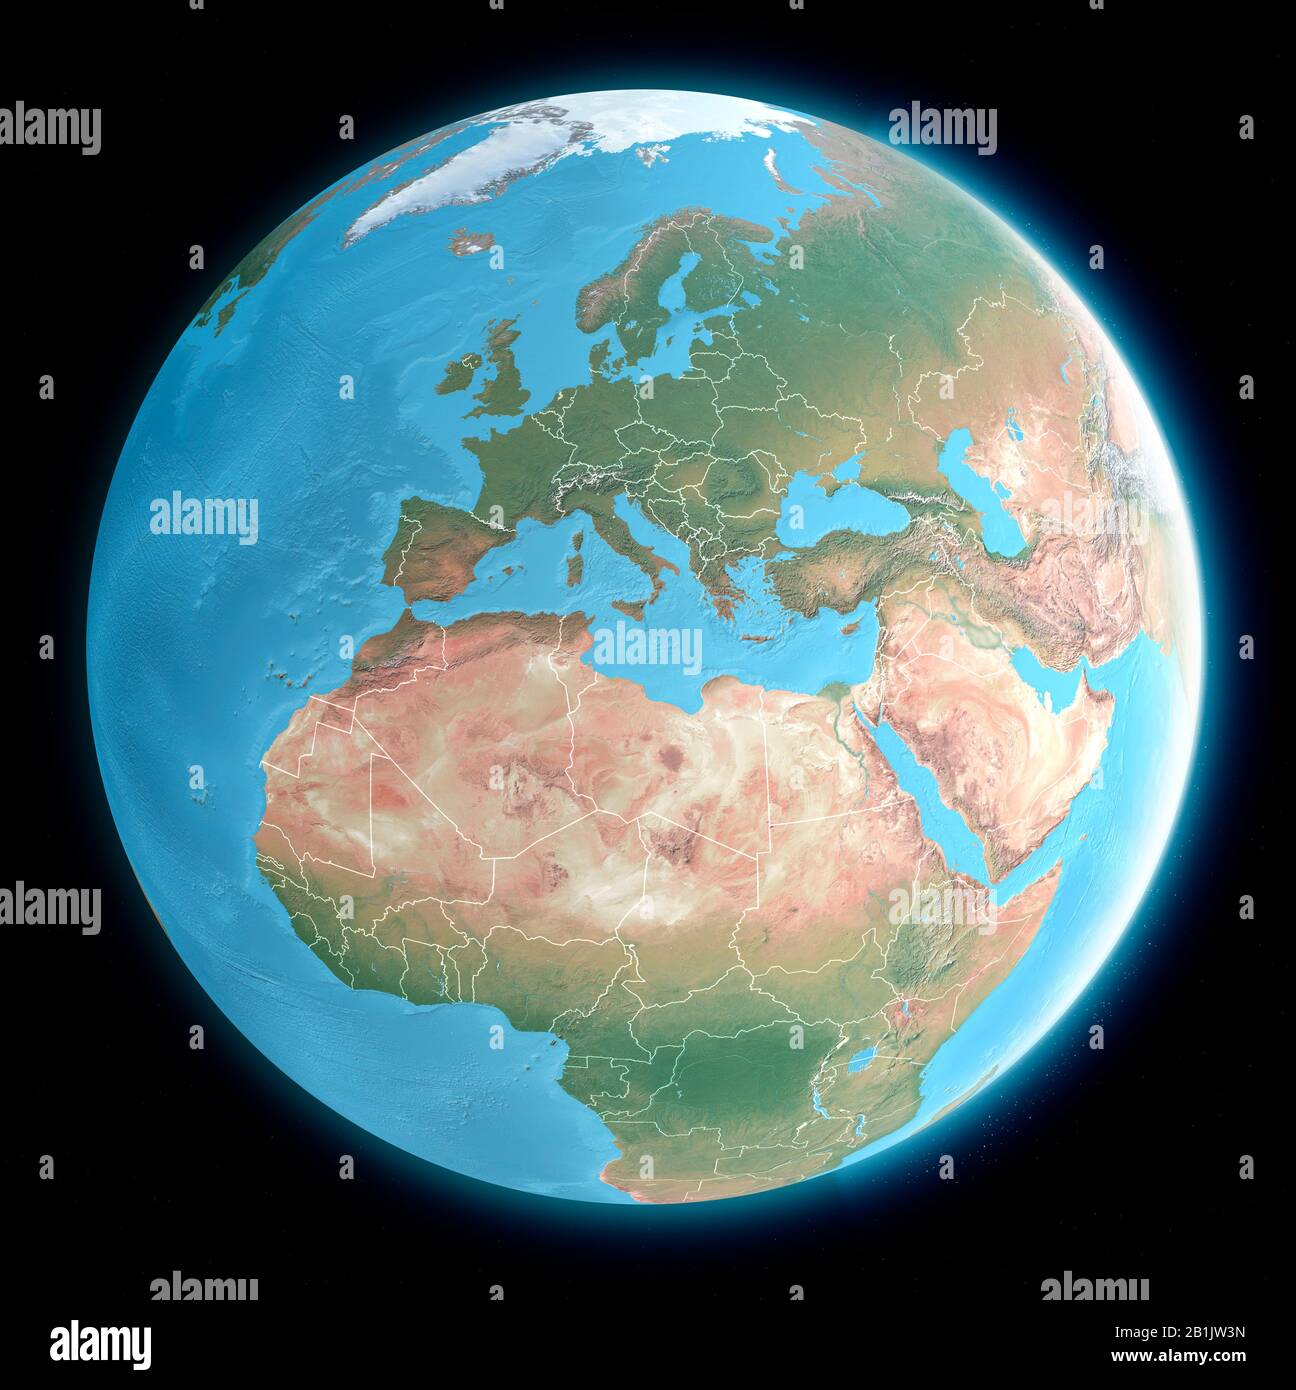 Weltkarte des Mittelmeers und Europas, Afrikas und des Nahen Ostens. Kartografie, geografischer Atlas. 3D-Rendering Stockfoto